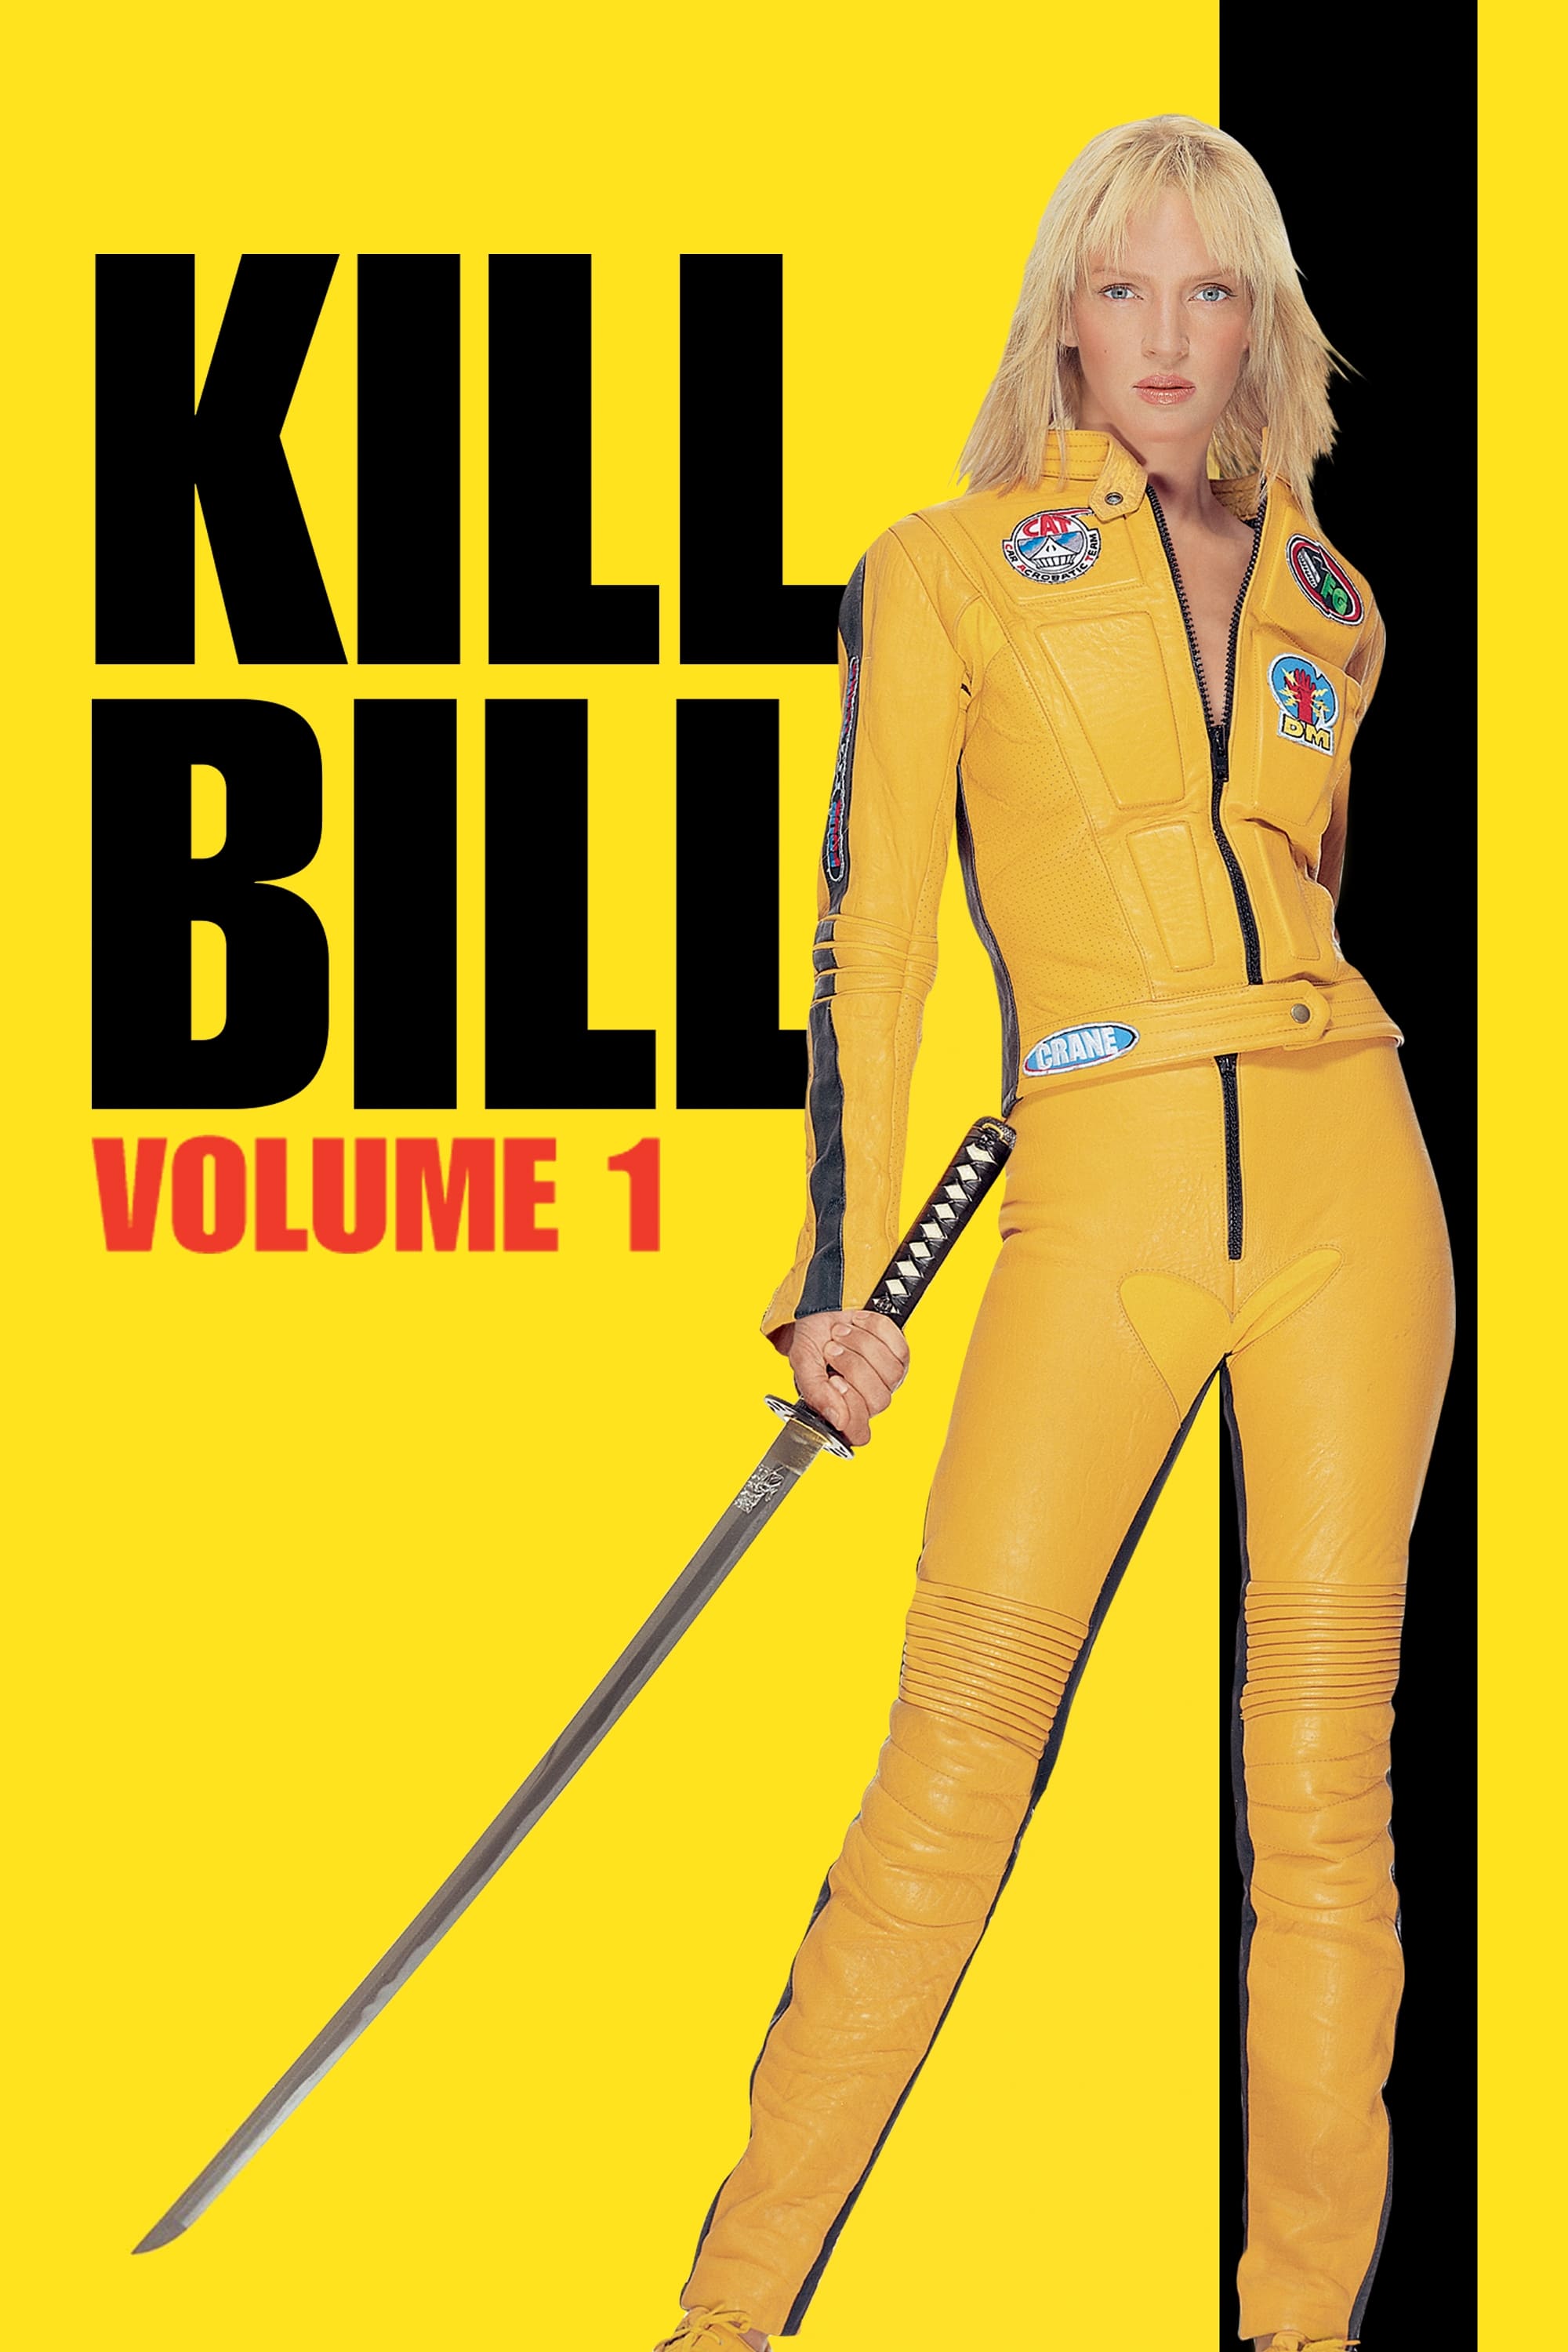 Kill Bill : Volume 1 (2003)